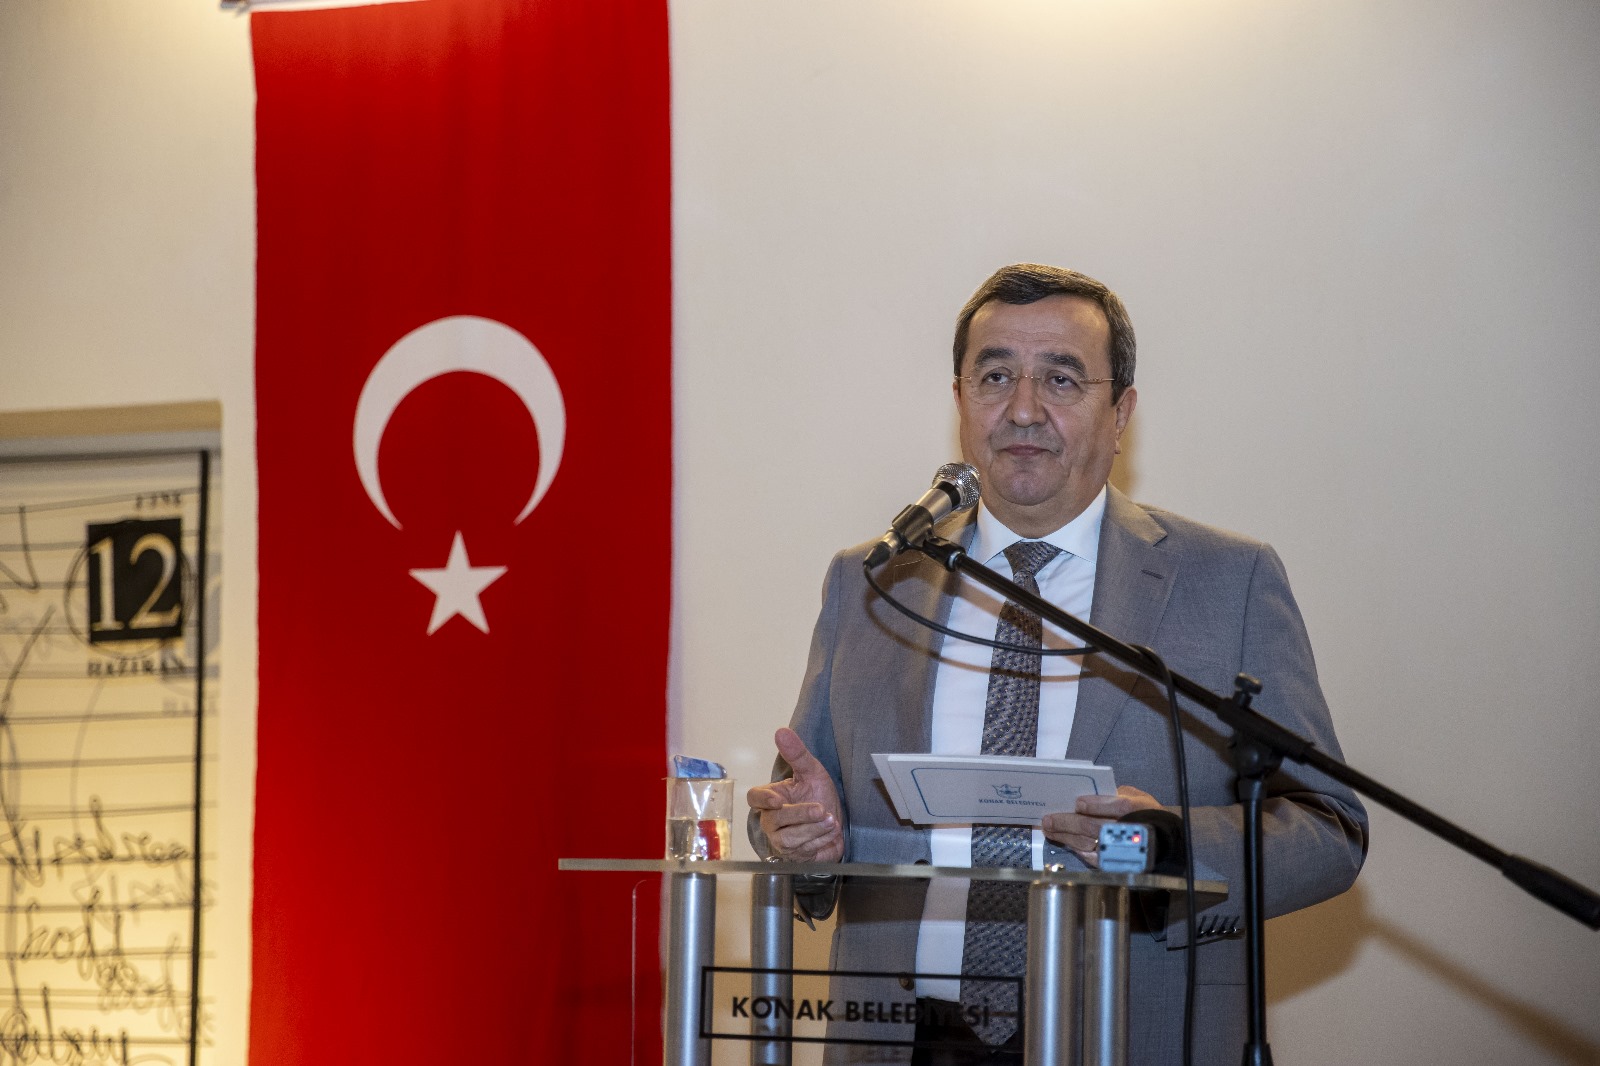 Konak Belediye Başkanı ve İzmir Büyükşehir Belediye Başkan Aday Adayı Abdül Batur, Konak Modern’in farklı kültürleri buluşturan bir sanat köprüsü olacağını söyledi. (2)